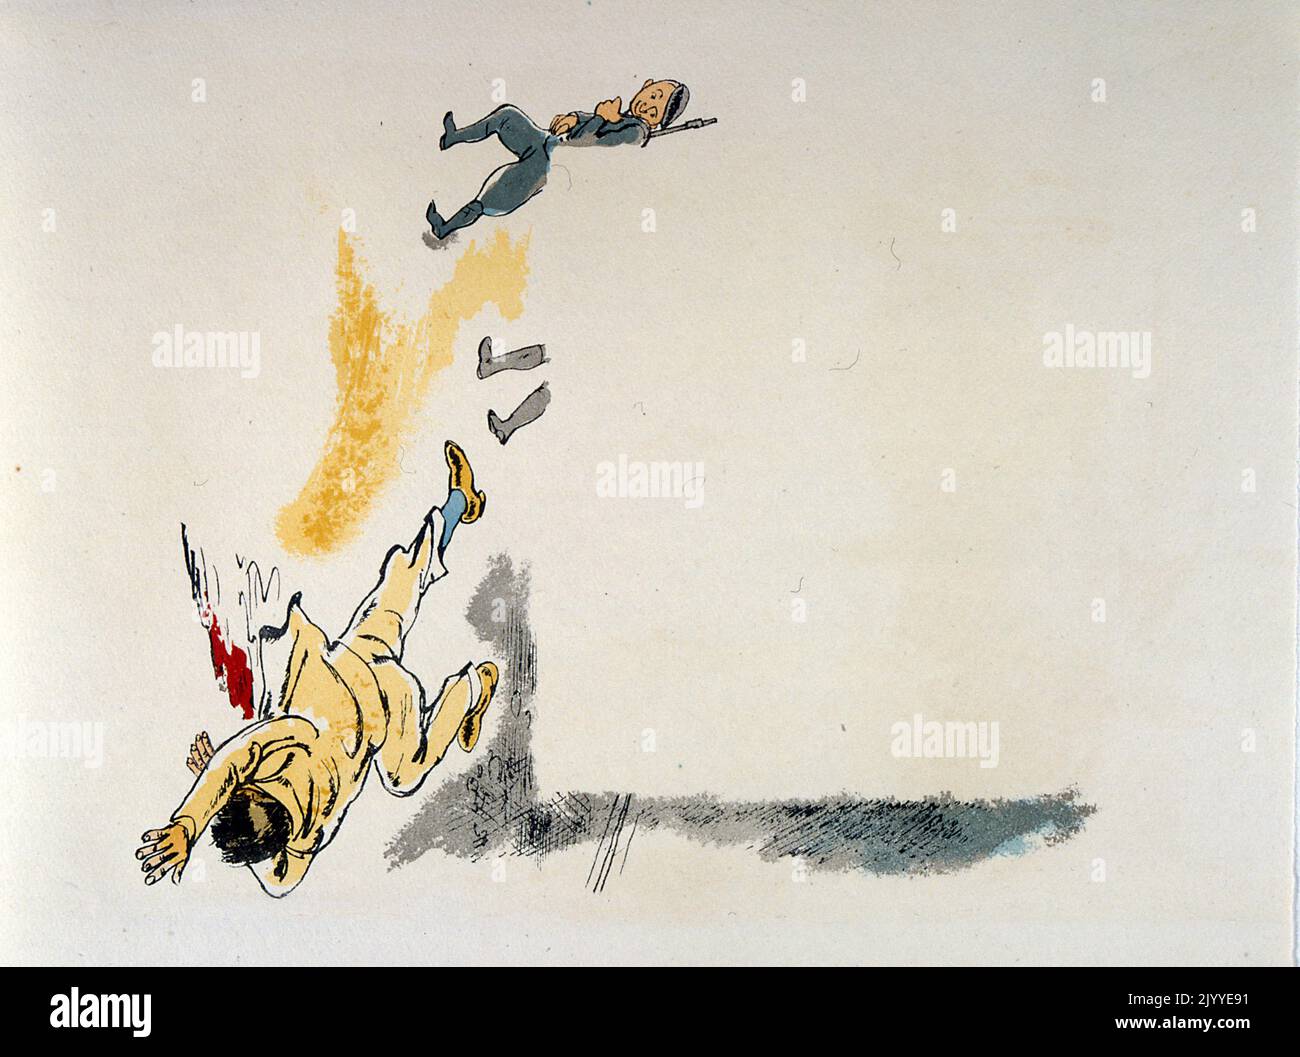 Farbige Illustration, die einen Mann zeigt, der tot liegt und vorbeigeht. Stockfoto